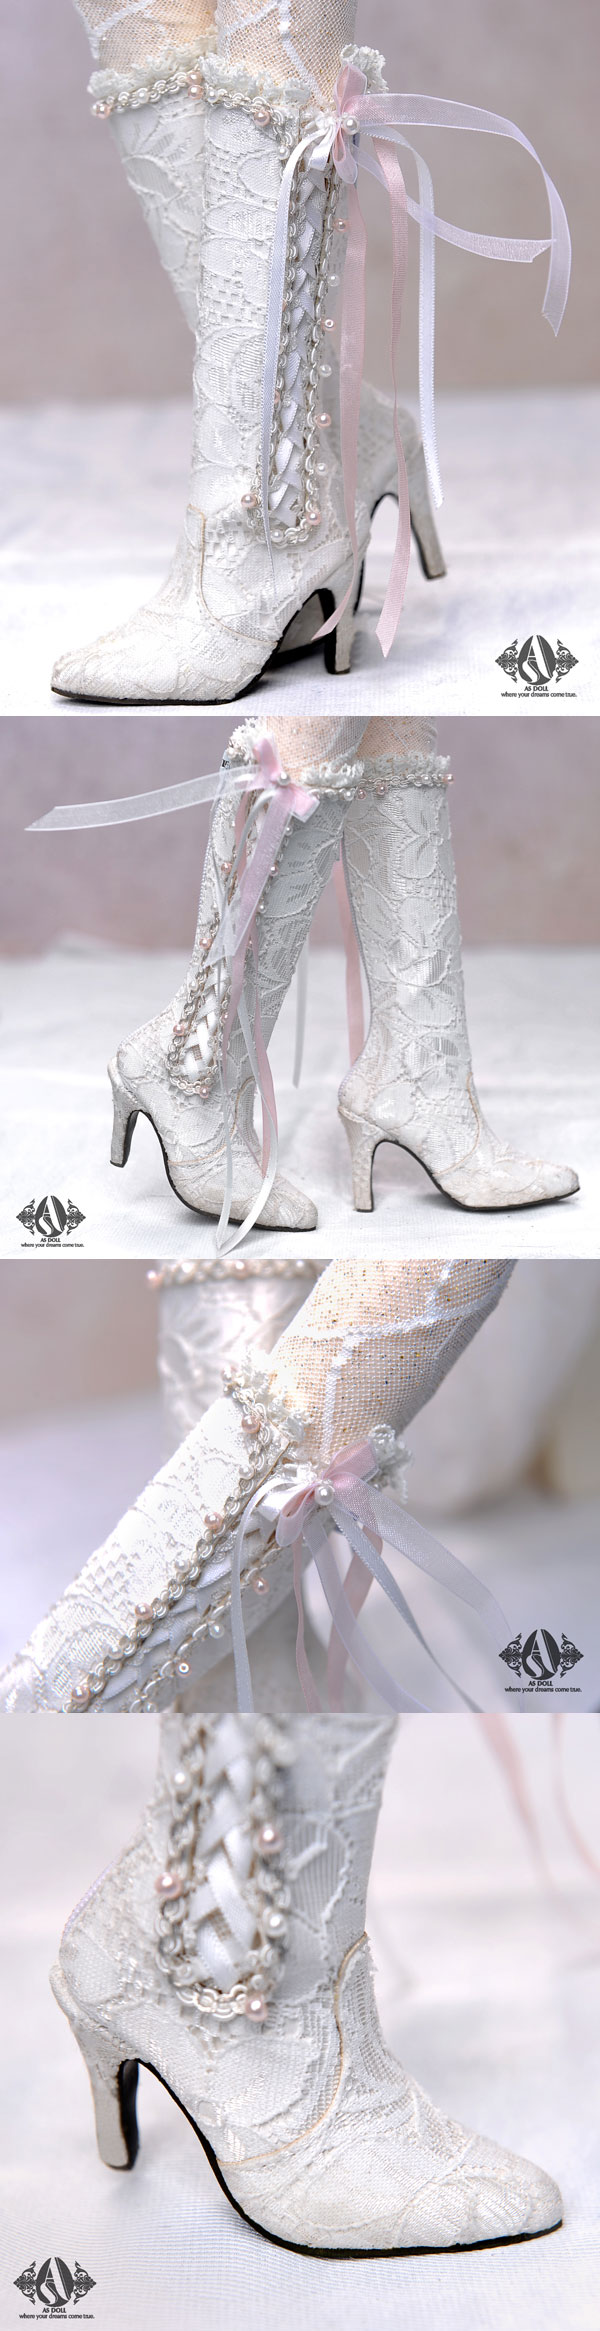 ドール靴 SDサイズ人形用 レーズゴシック靴「白」  SH314113